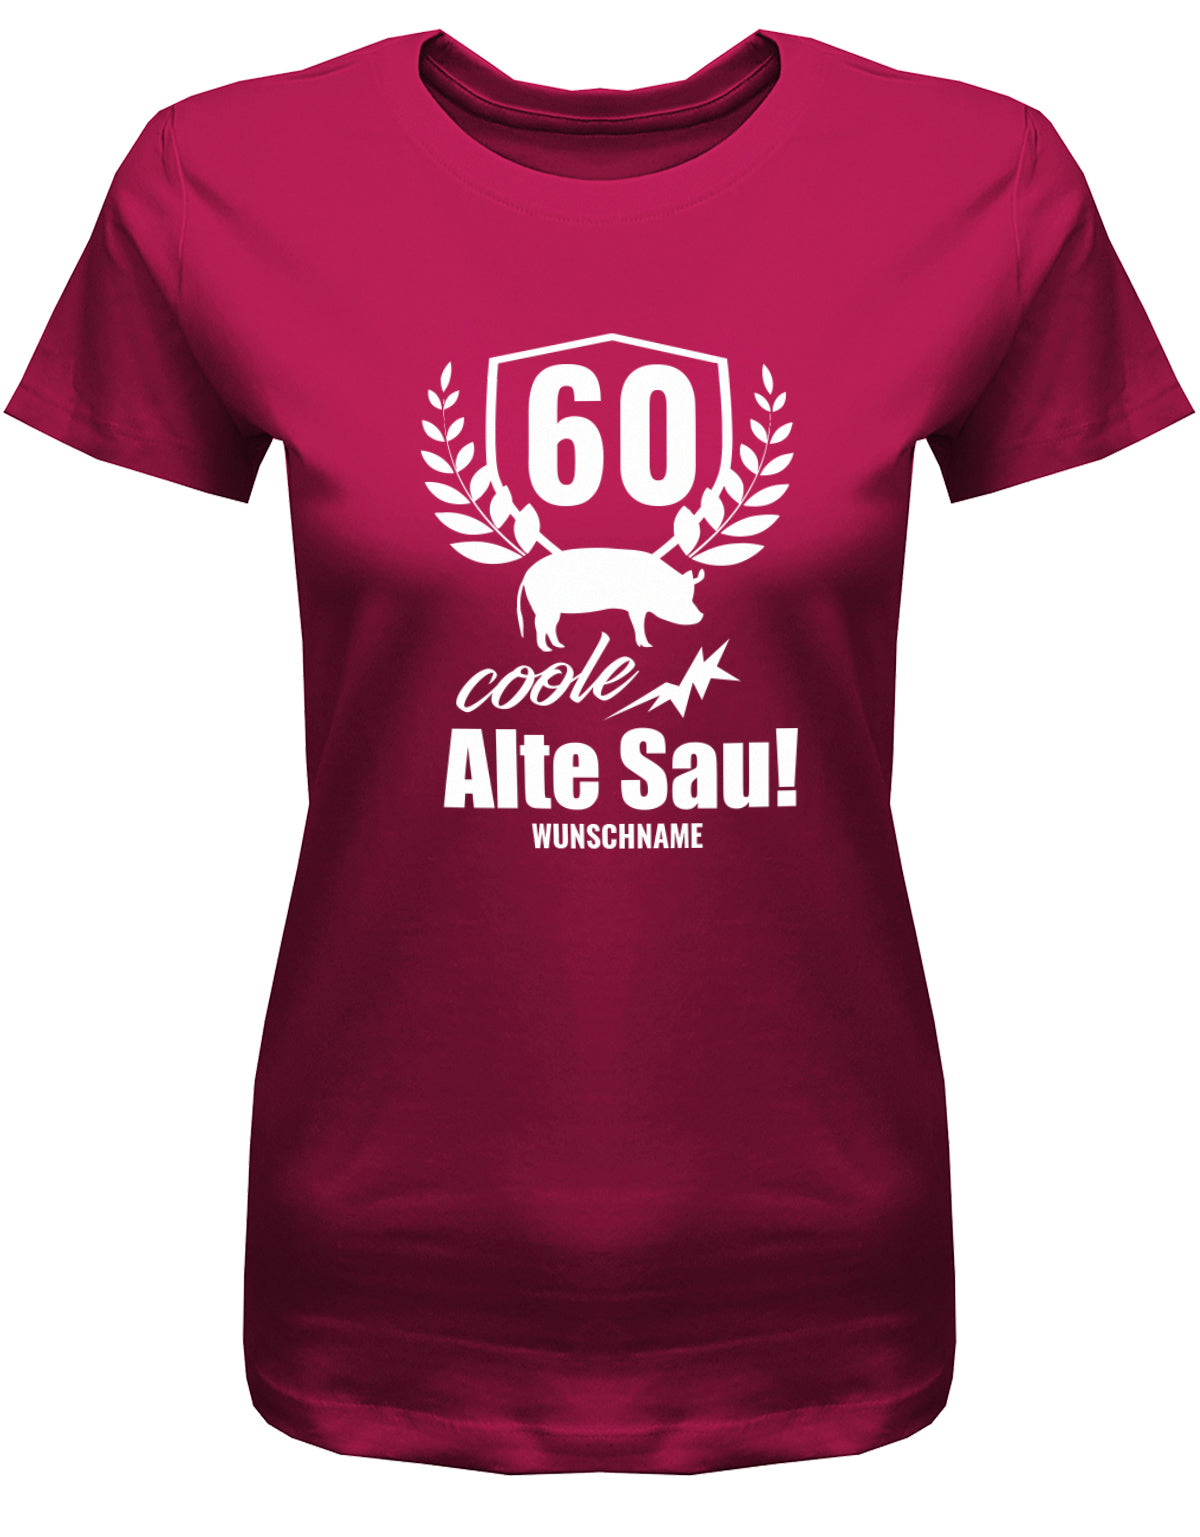 Lustiges T-Shirt zum 60 Geburtstag für die Frau Bedruckt mit 60 coole alte Sau personalisiert mit Name Sorbet